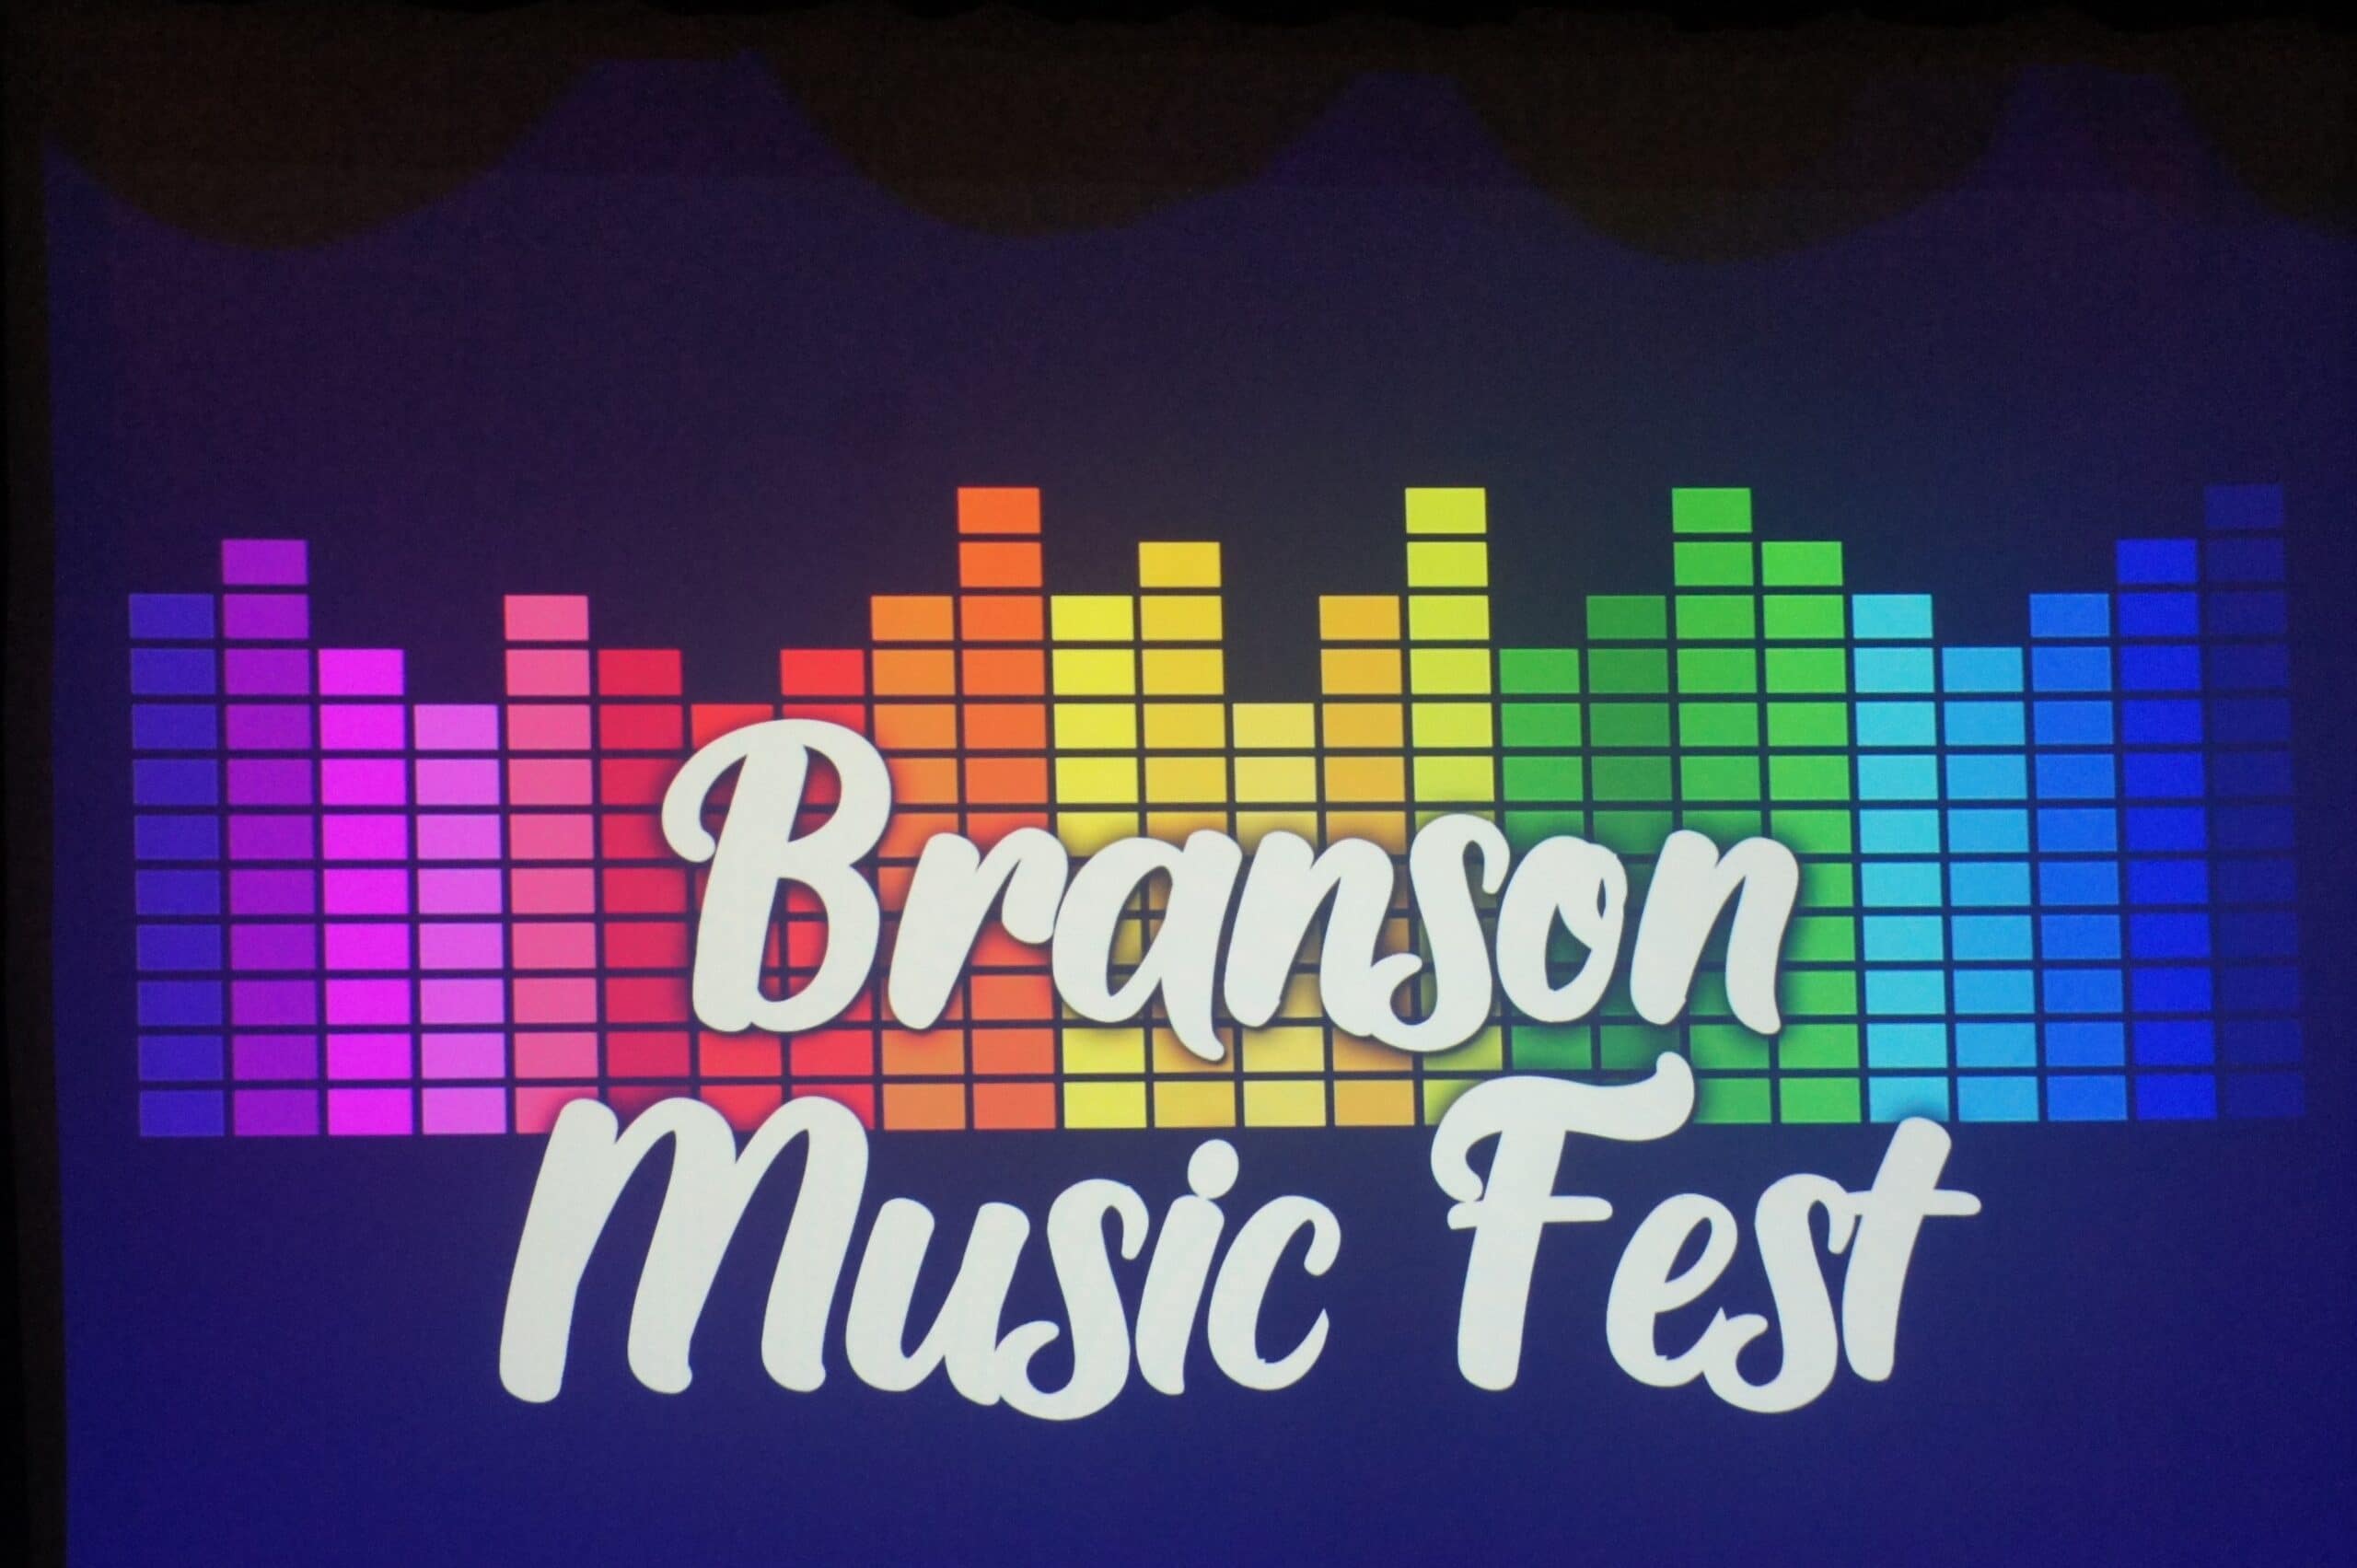 Branson Musicfest